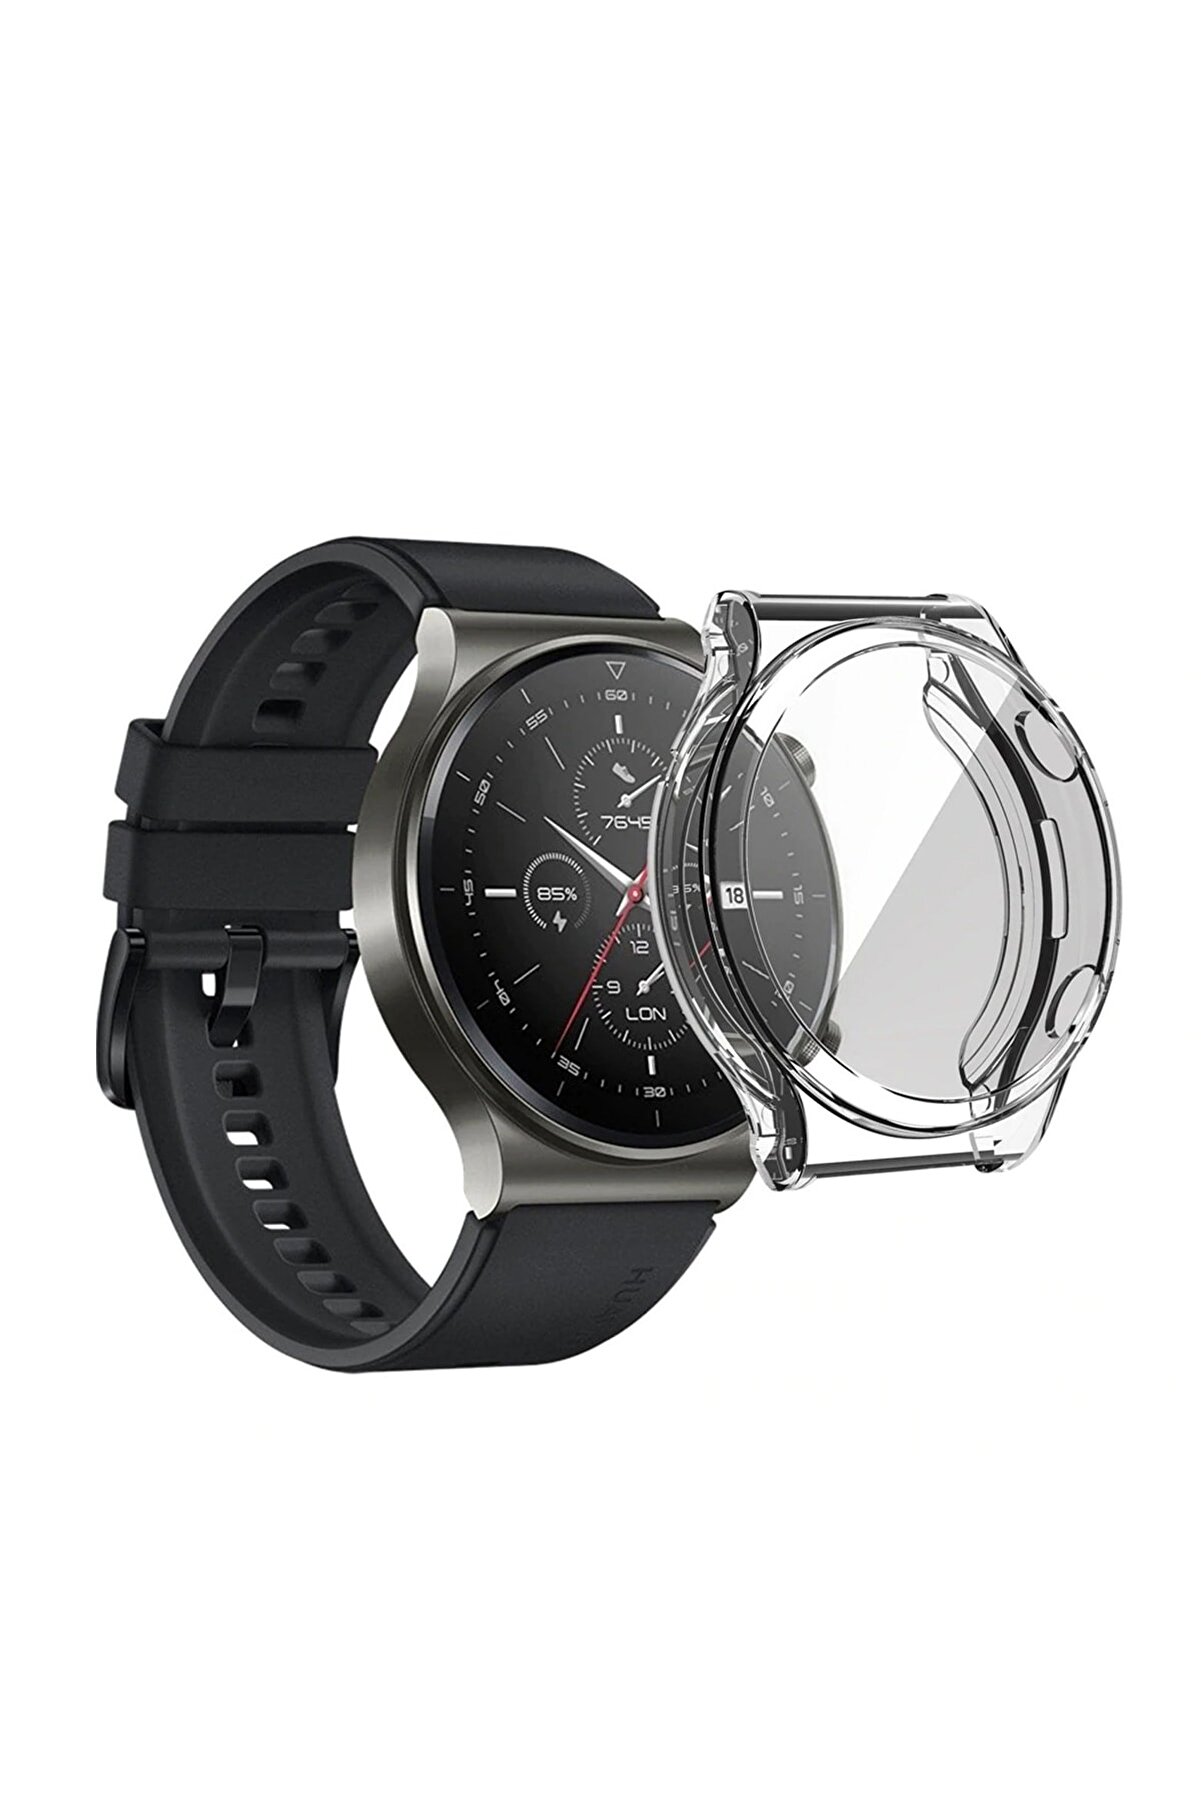 Microcase Huawei Watch Gt2 Pro 46mm Önü Kapalı Tasarım Silikon Kılıf - Şeffaf